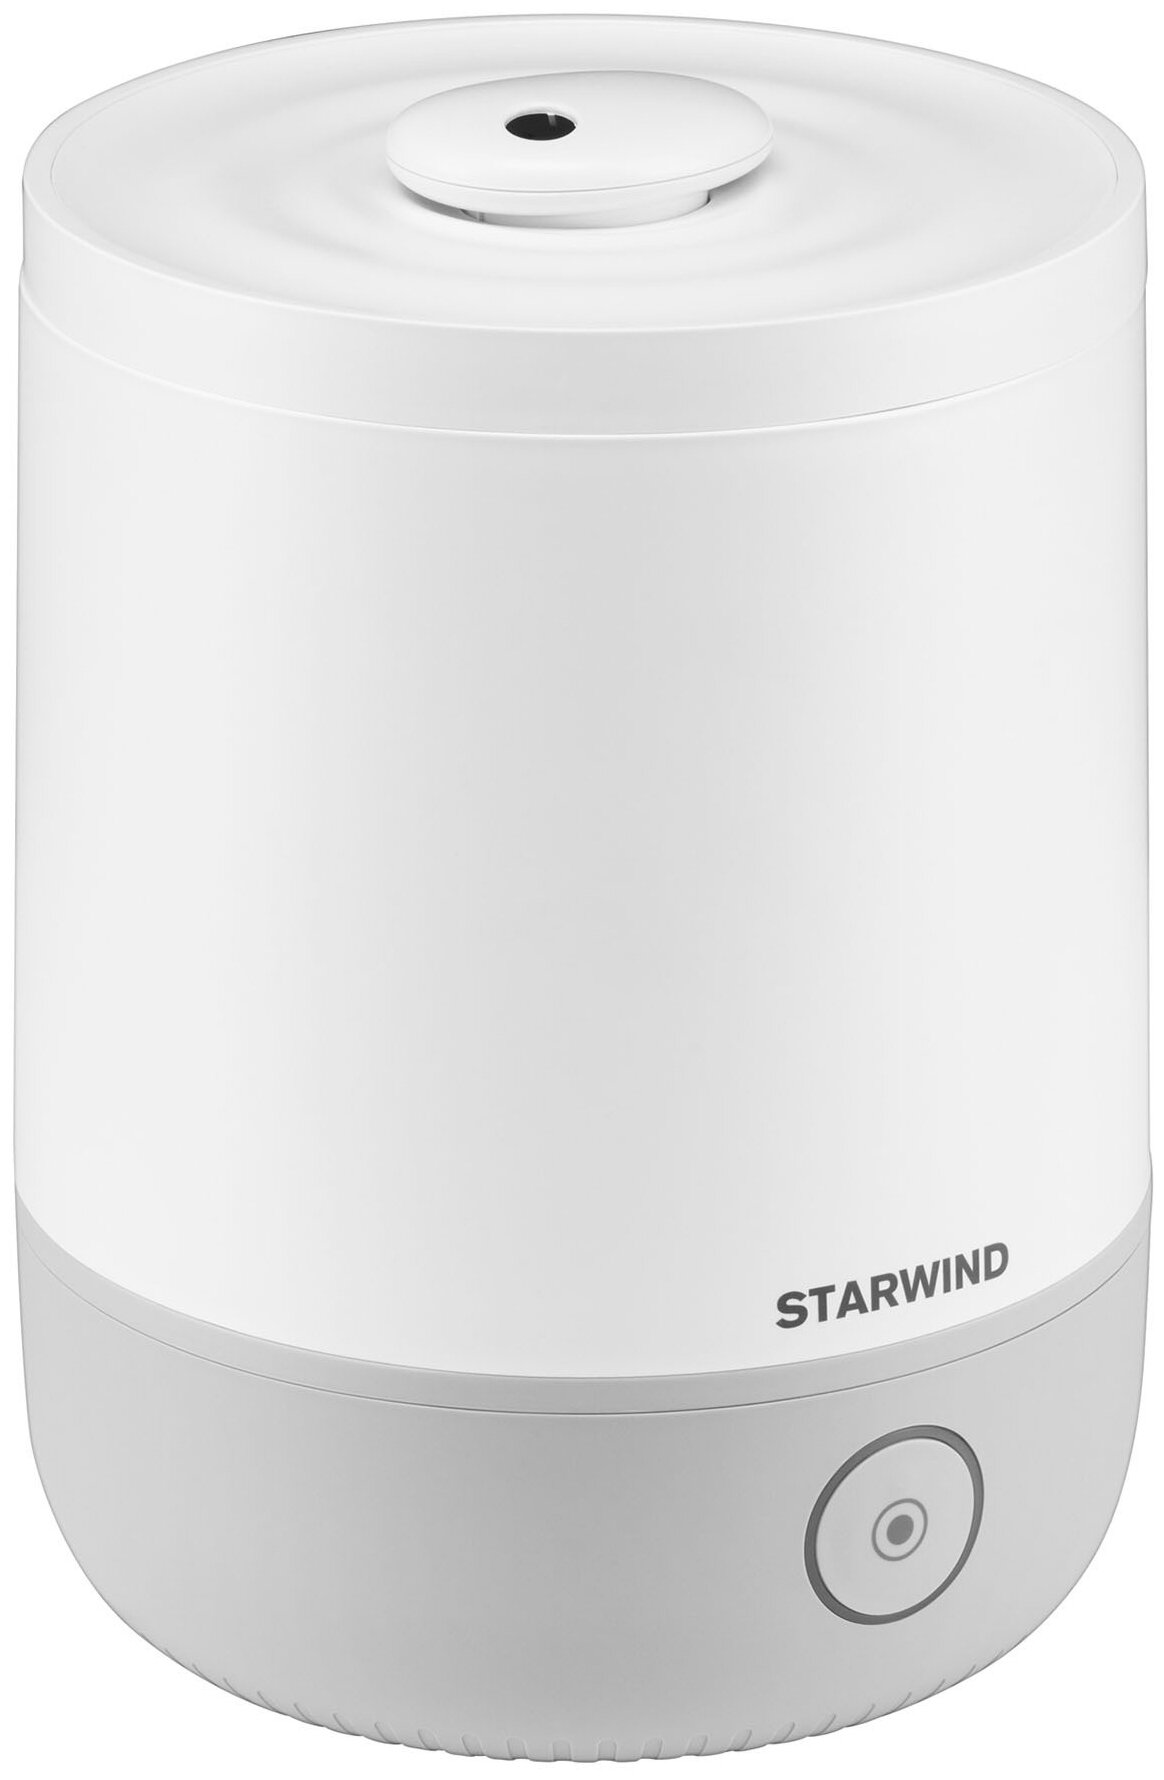 Увлажнитель воздуха с функцией ароматизации STARWIND SHC1523, белый/серый